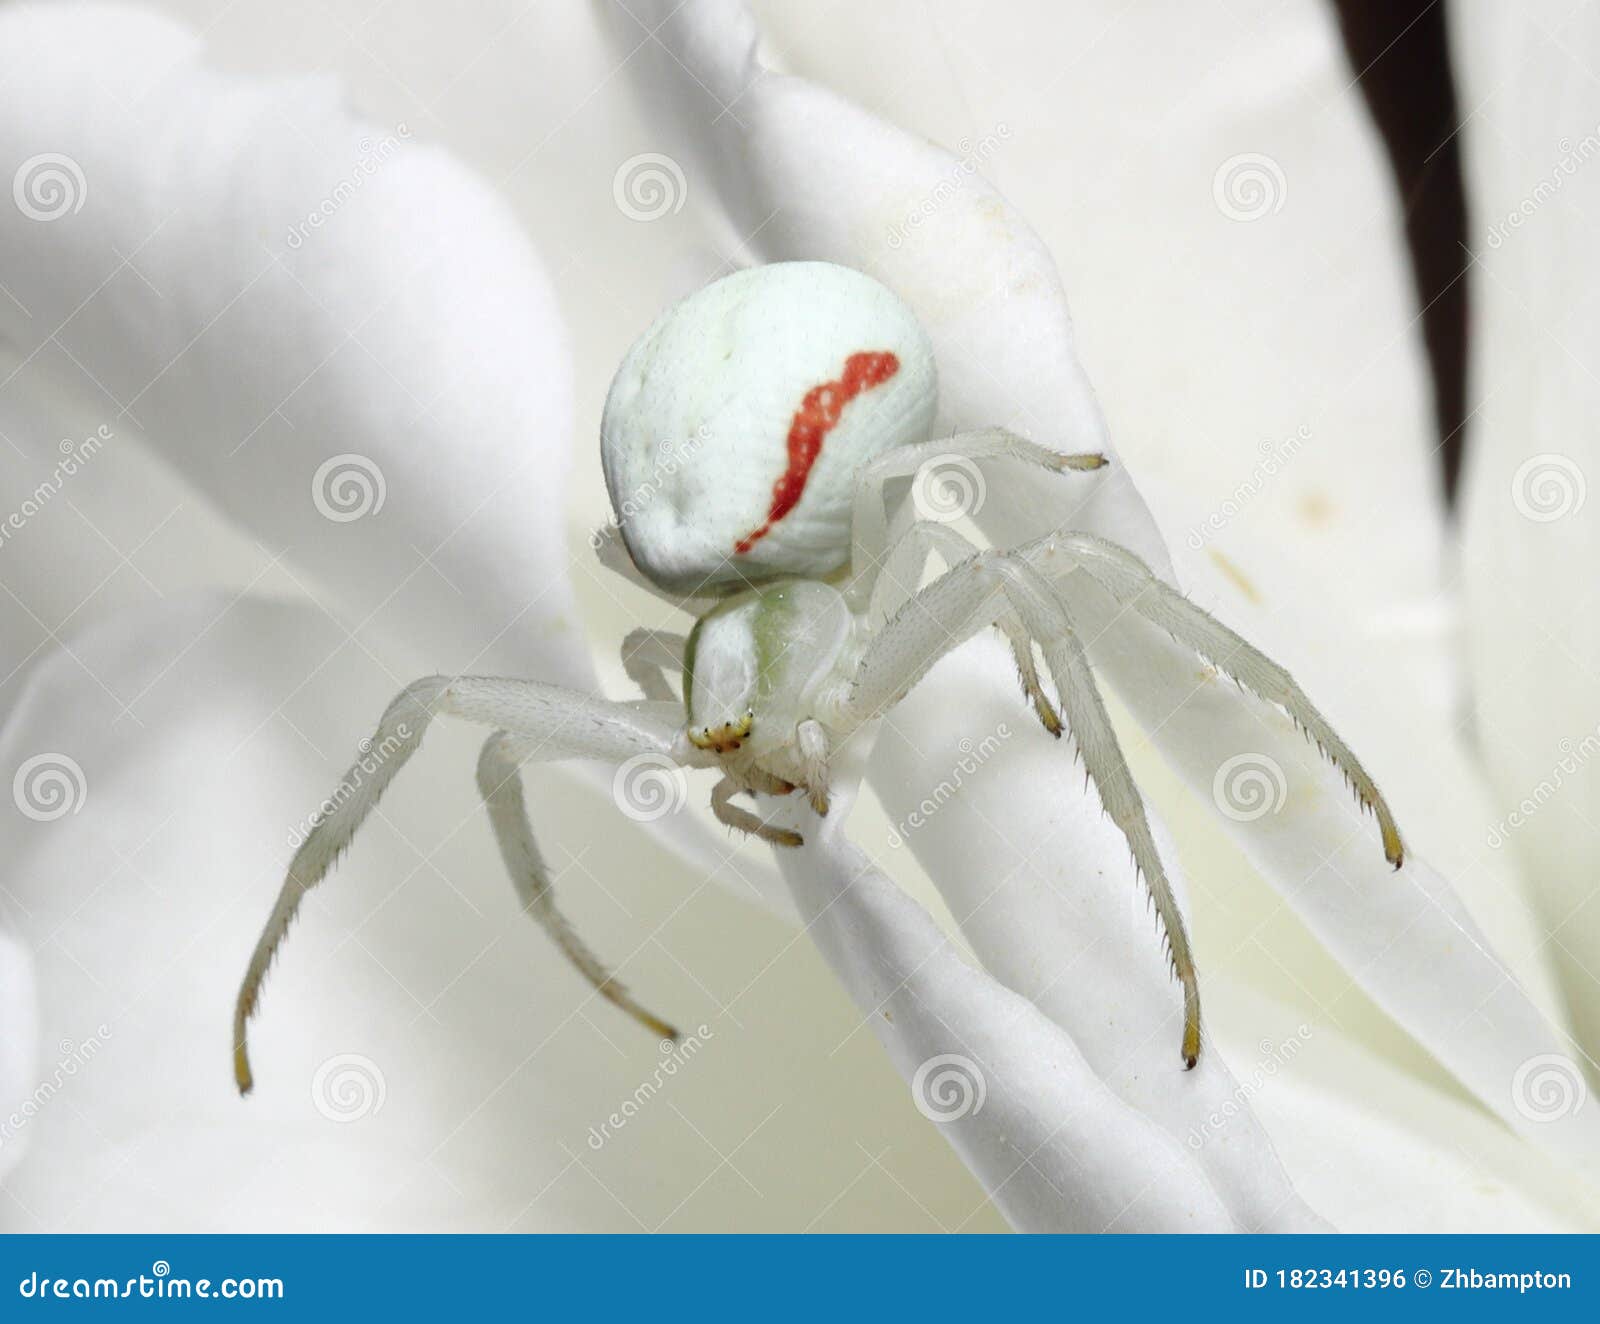 White Death Crab Spider Misumena Vatia Photo - of large, creepy: 182341396